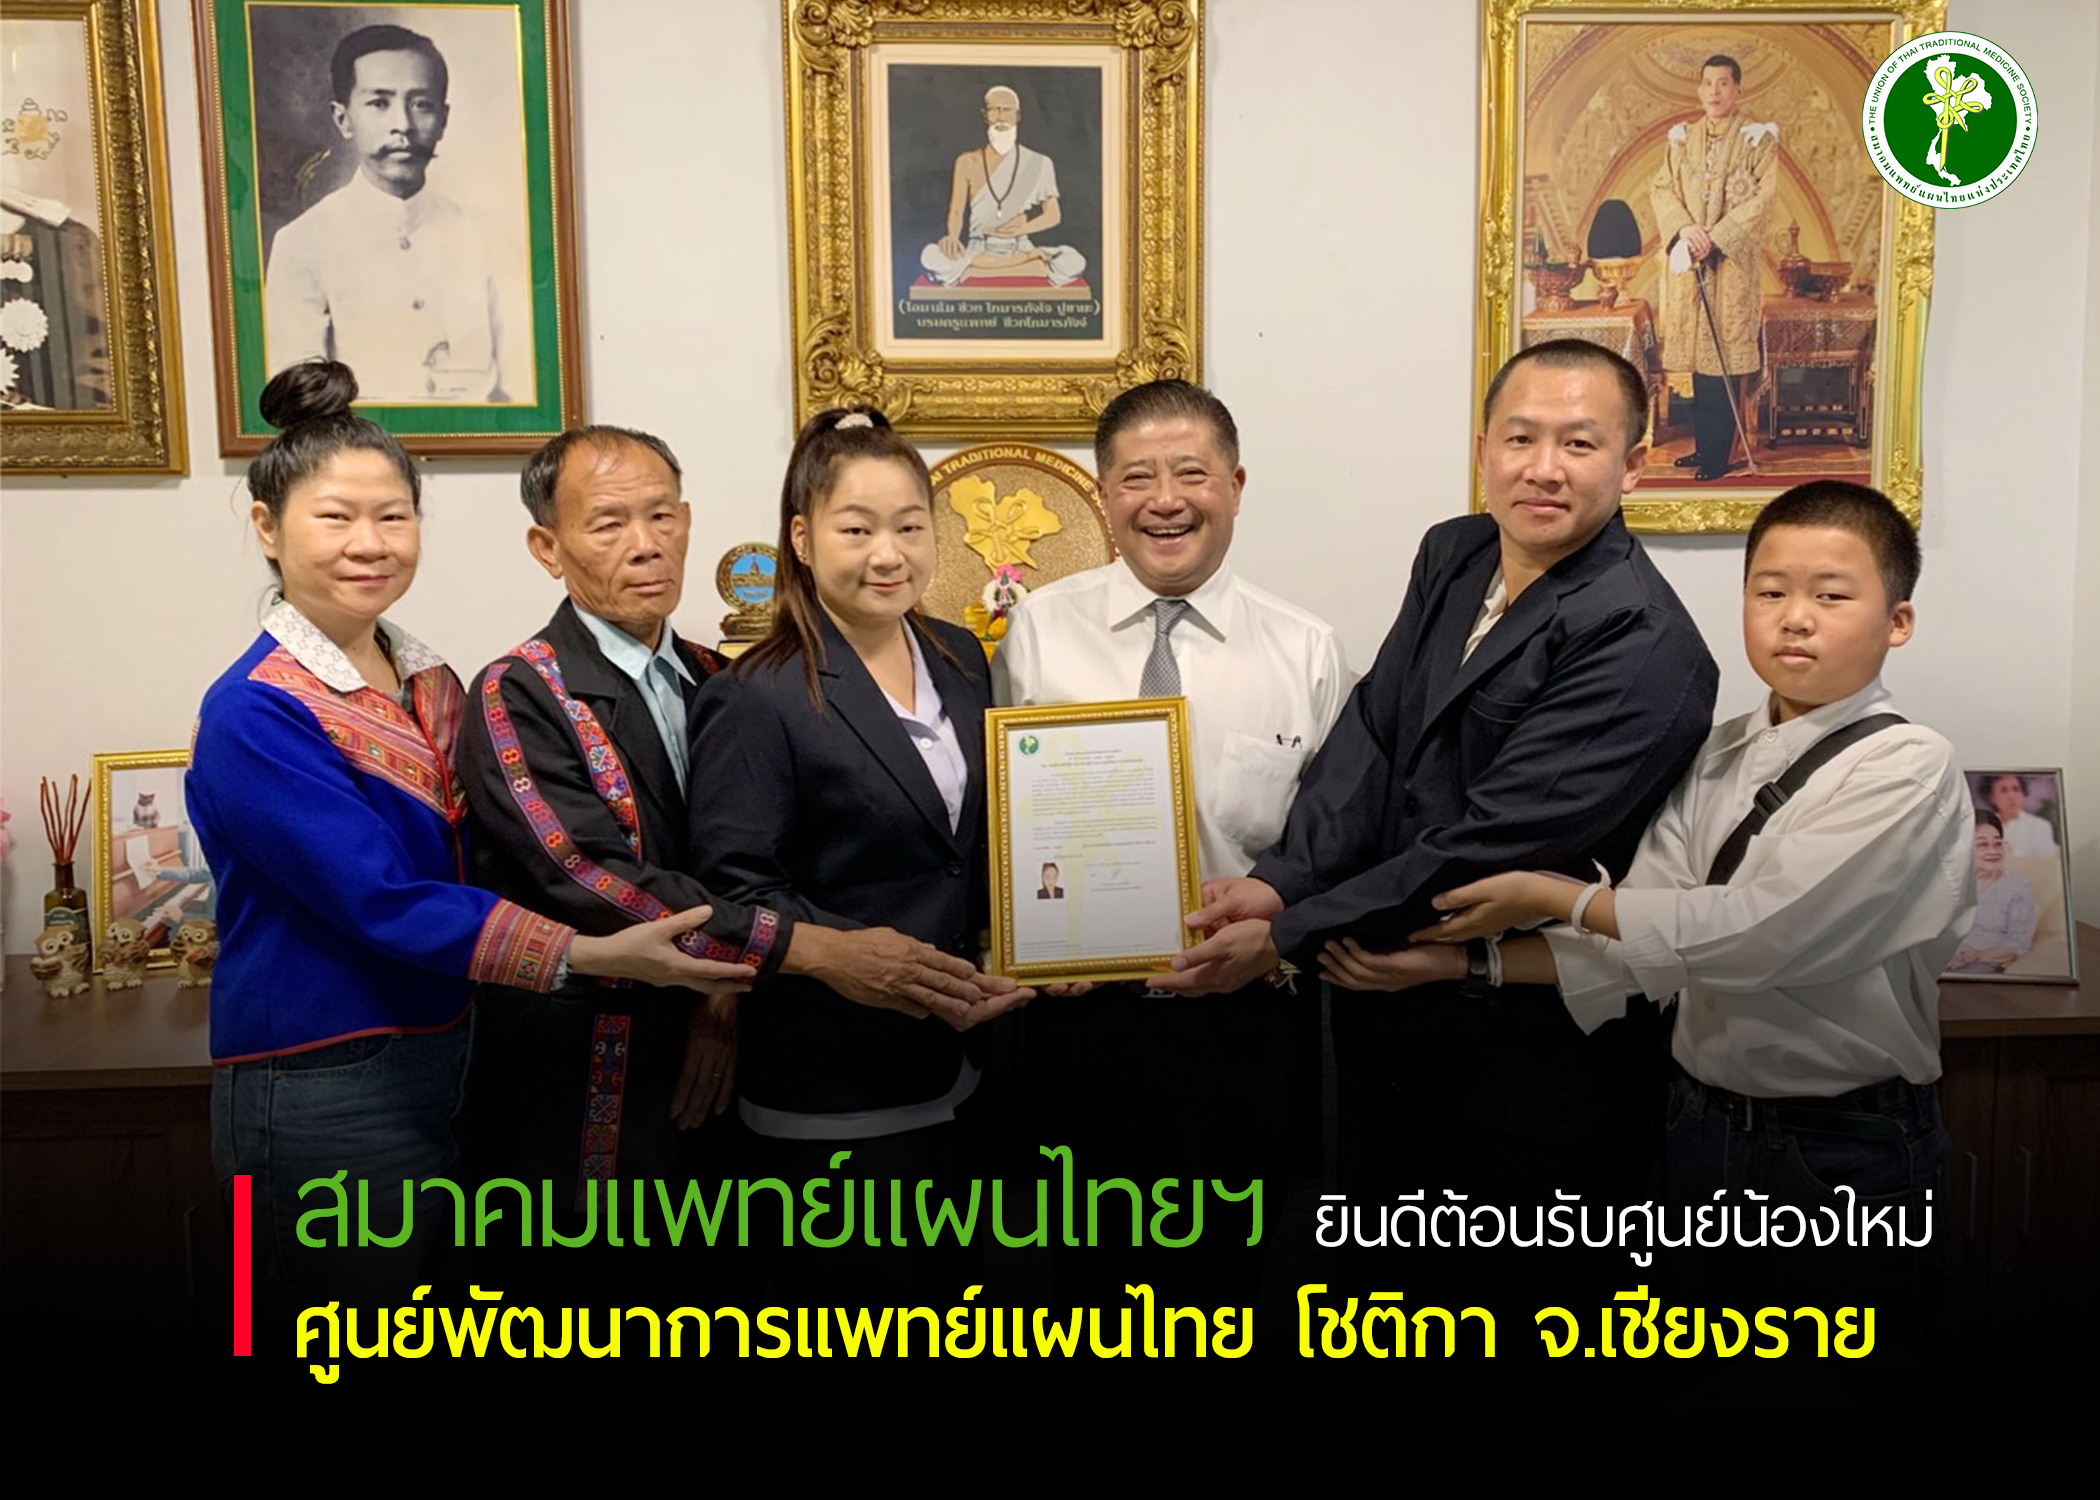 สมาคมแพทย์แผนไทยแห่งประเทศไทย ยินดีต้อนรับศูนย์น้องใหม่ ศูนย์พัฒนาการแพทย์แผนไทย โชติกา จ.เชียงราย